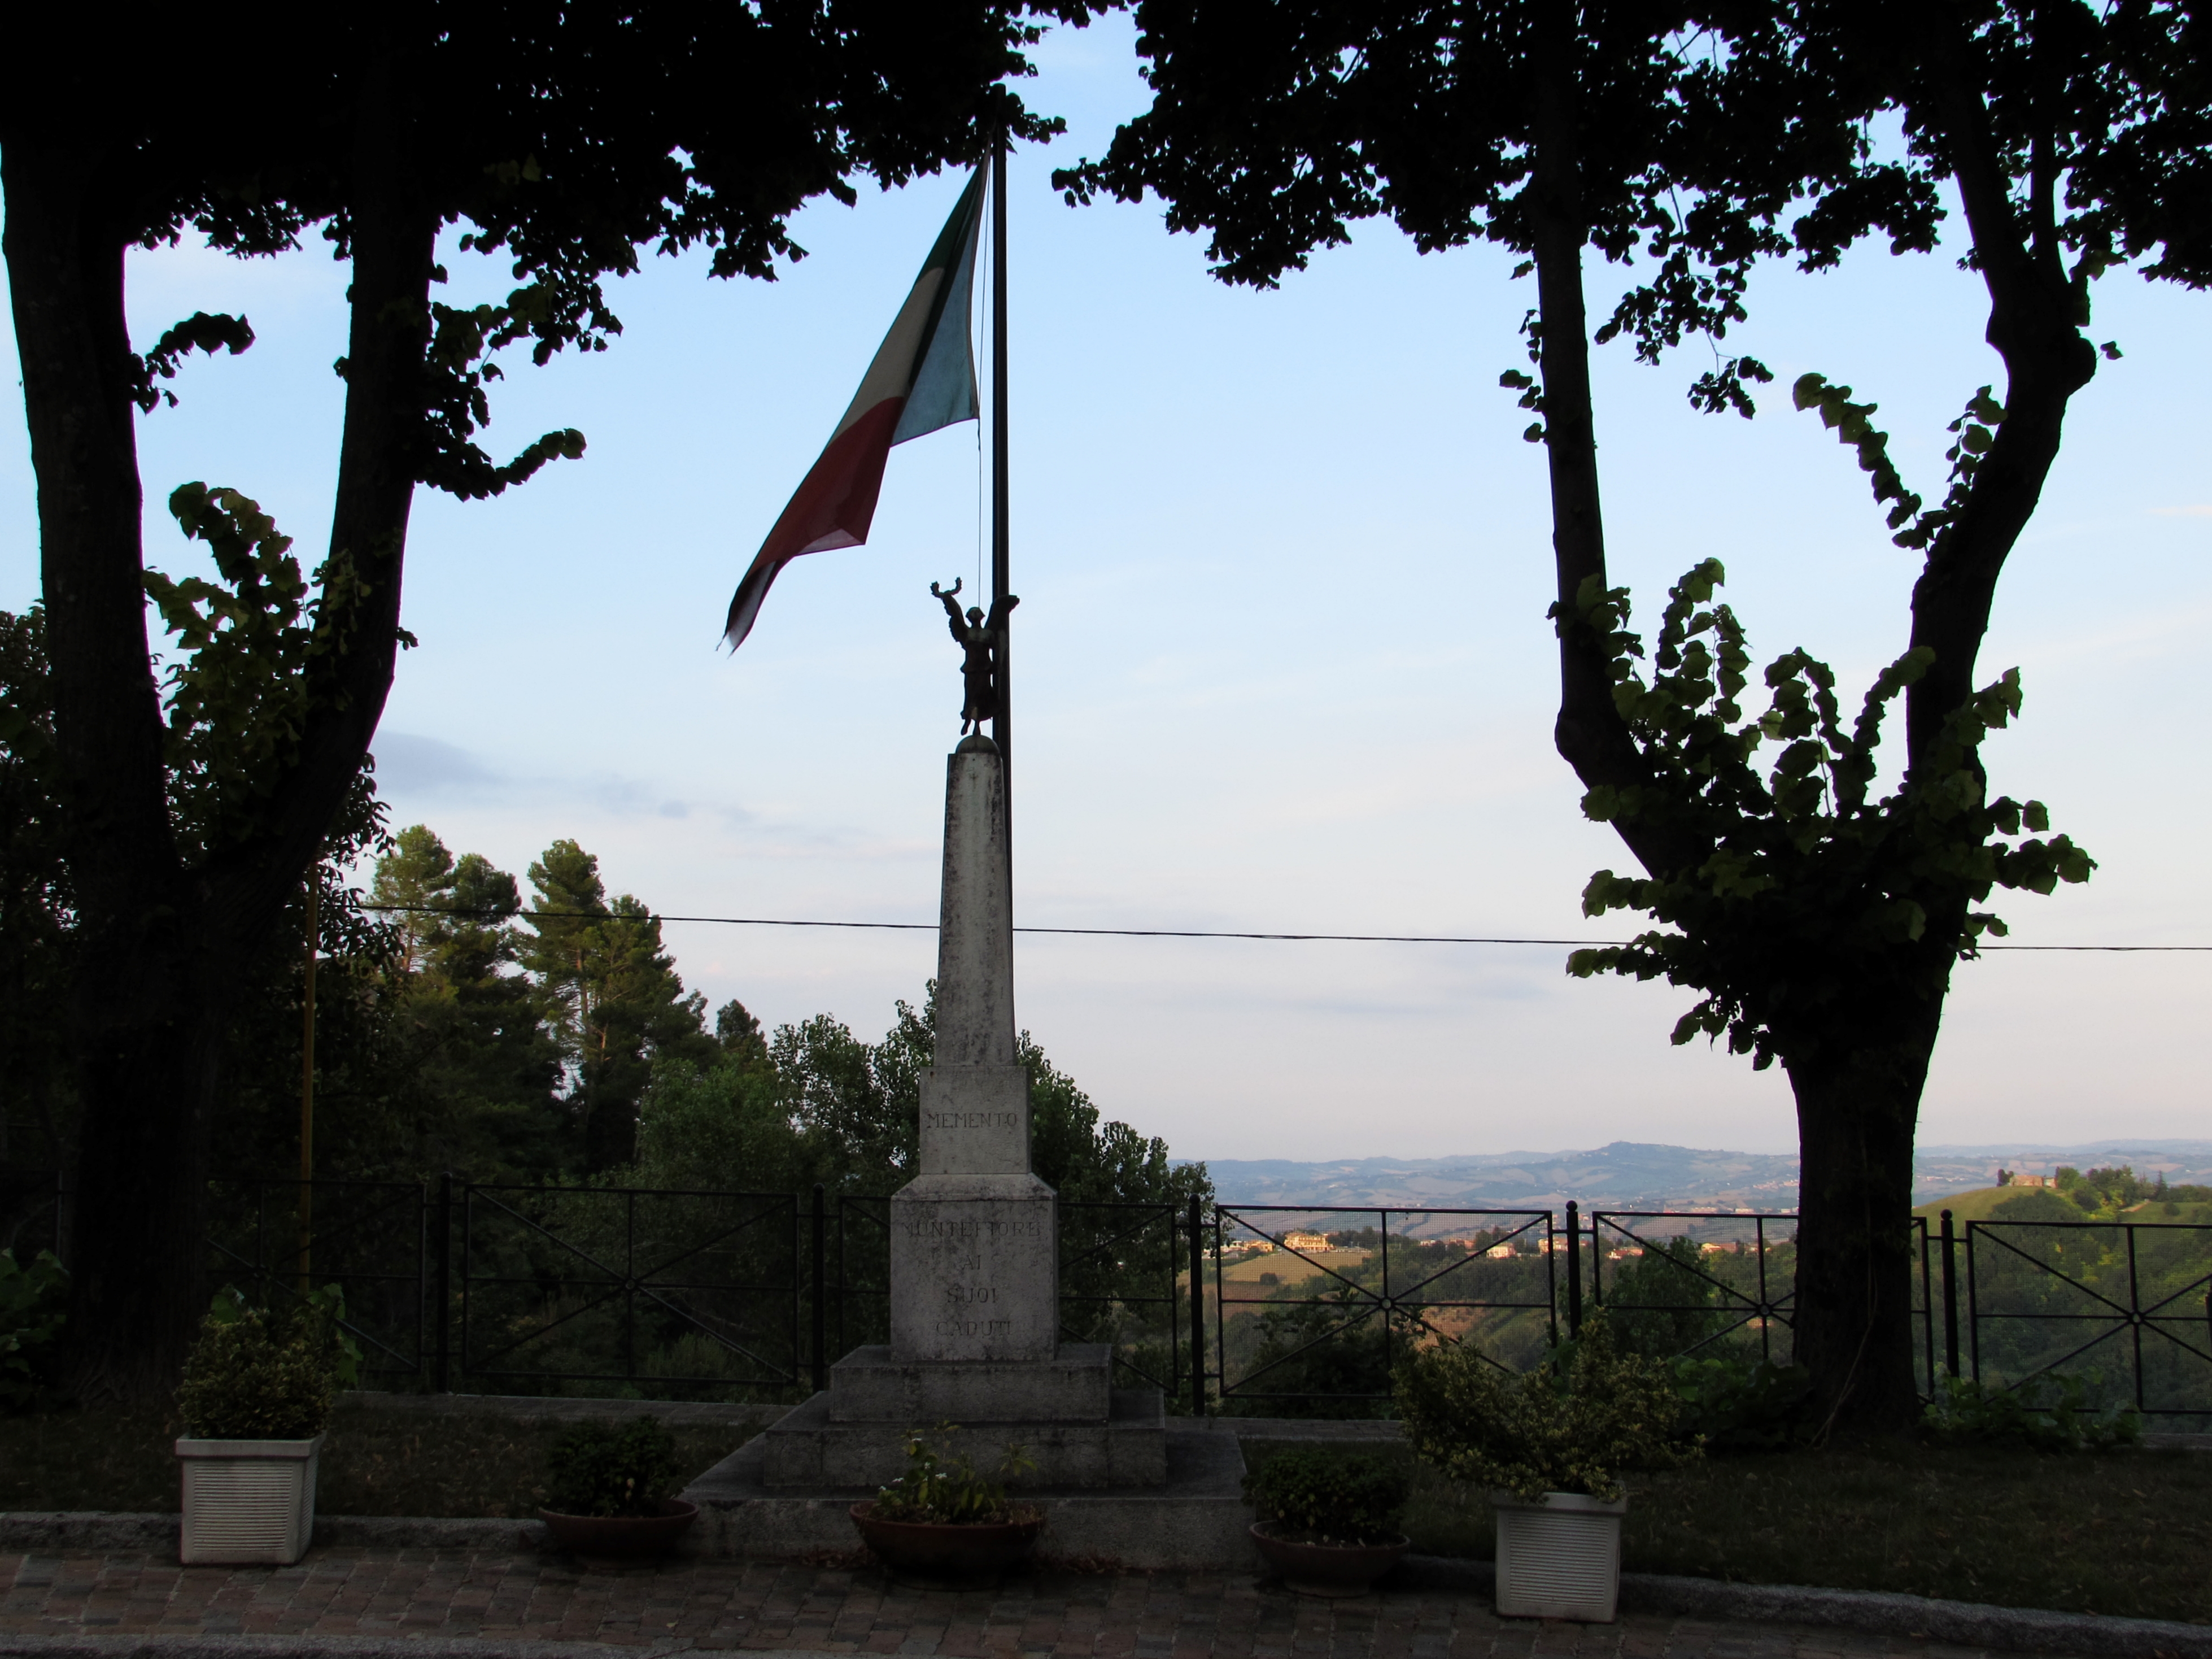 photo: https://upload.wikimedia.org/wikipedia/commons/d/dc/Il_monumento_il_tricolore_e_il_vento.jpg